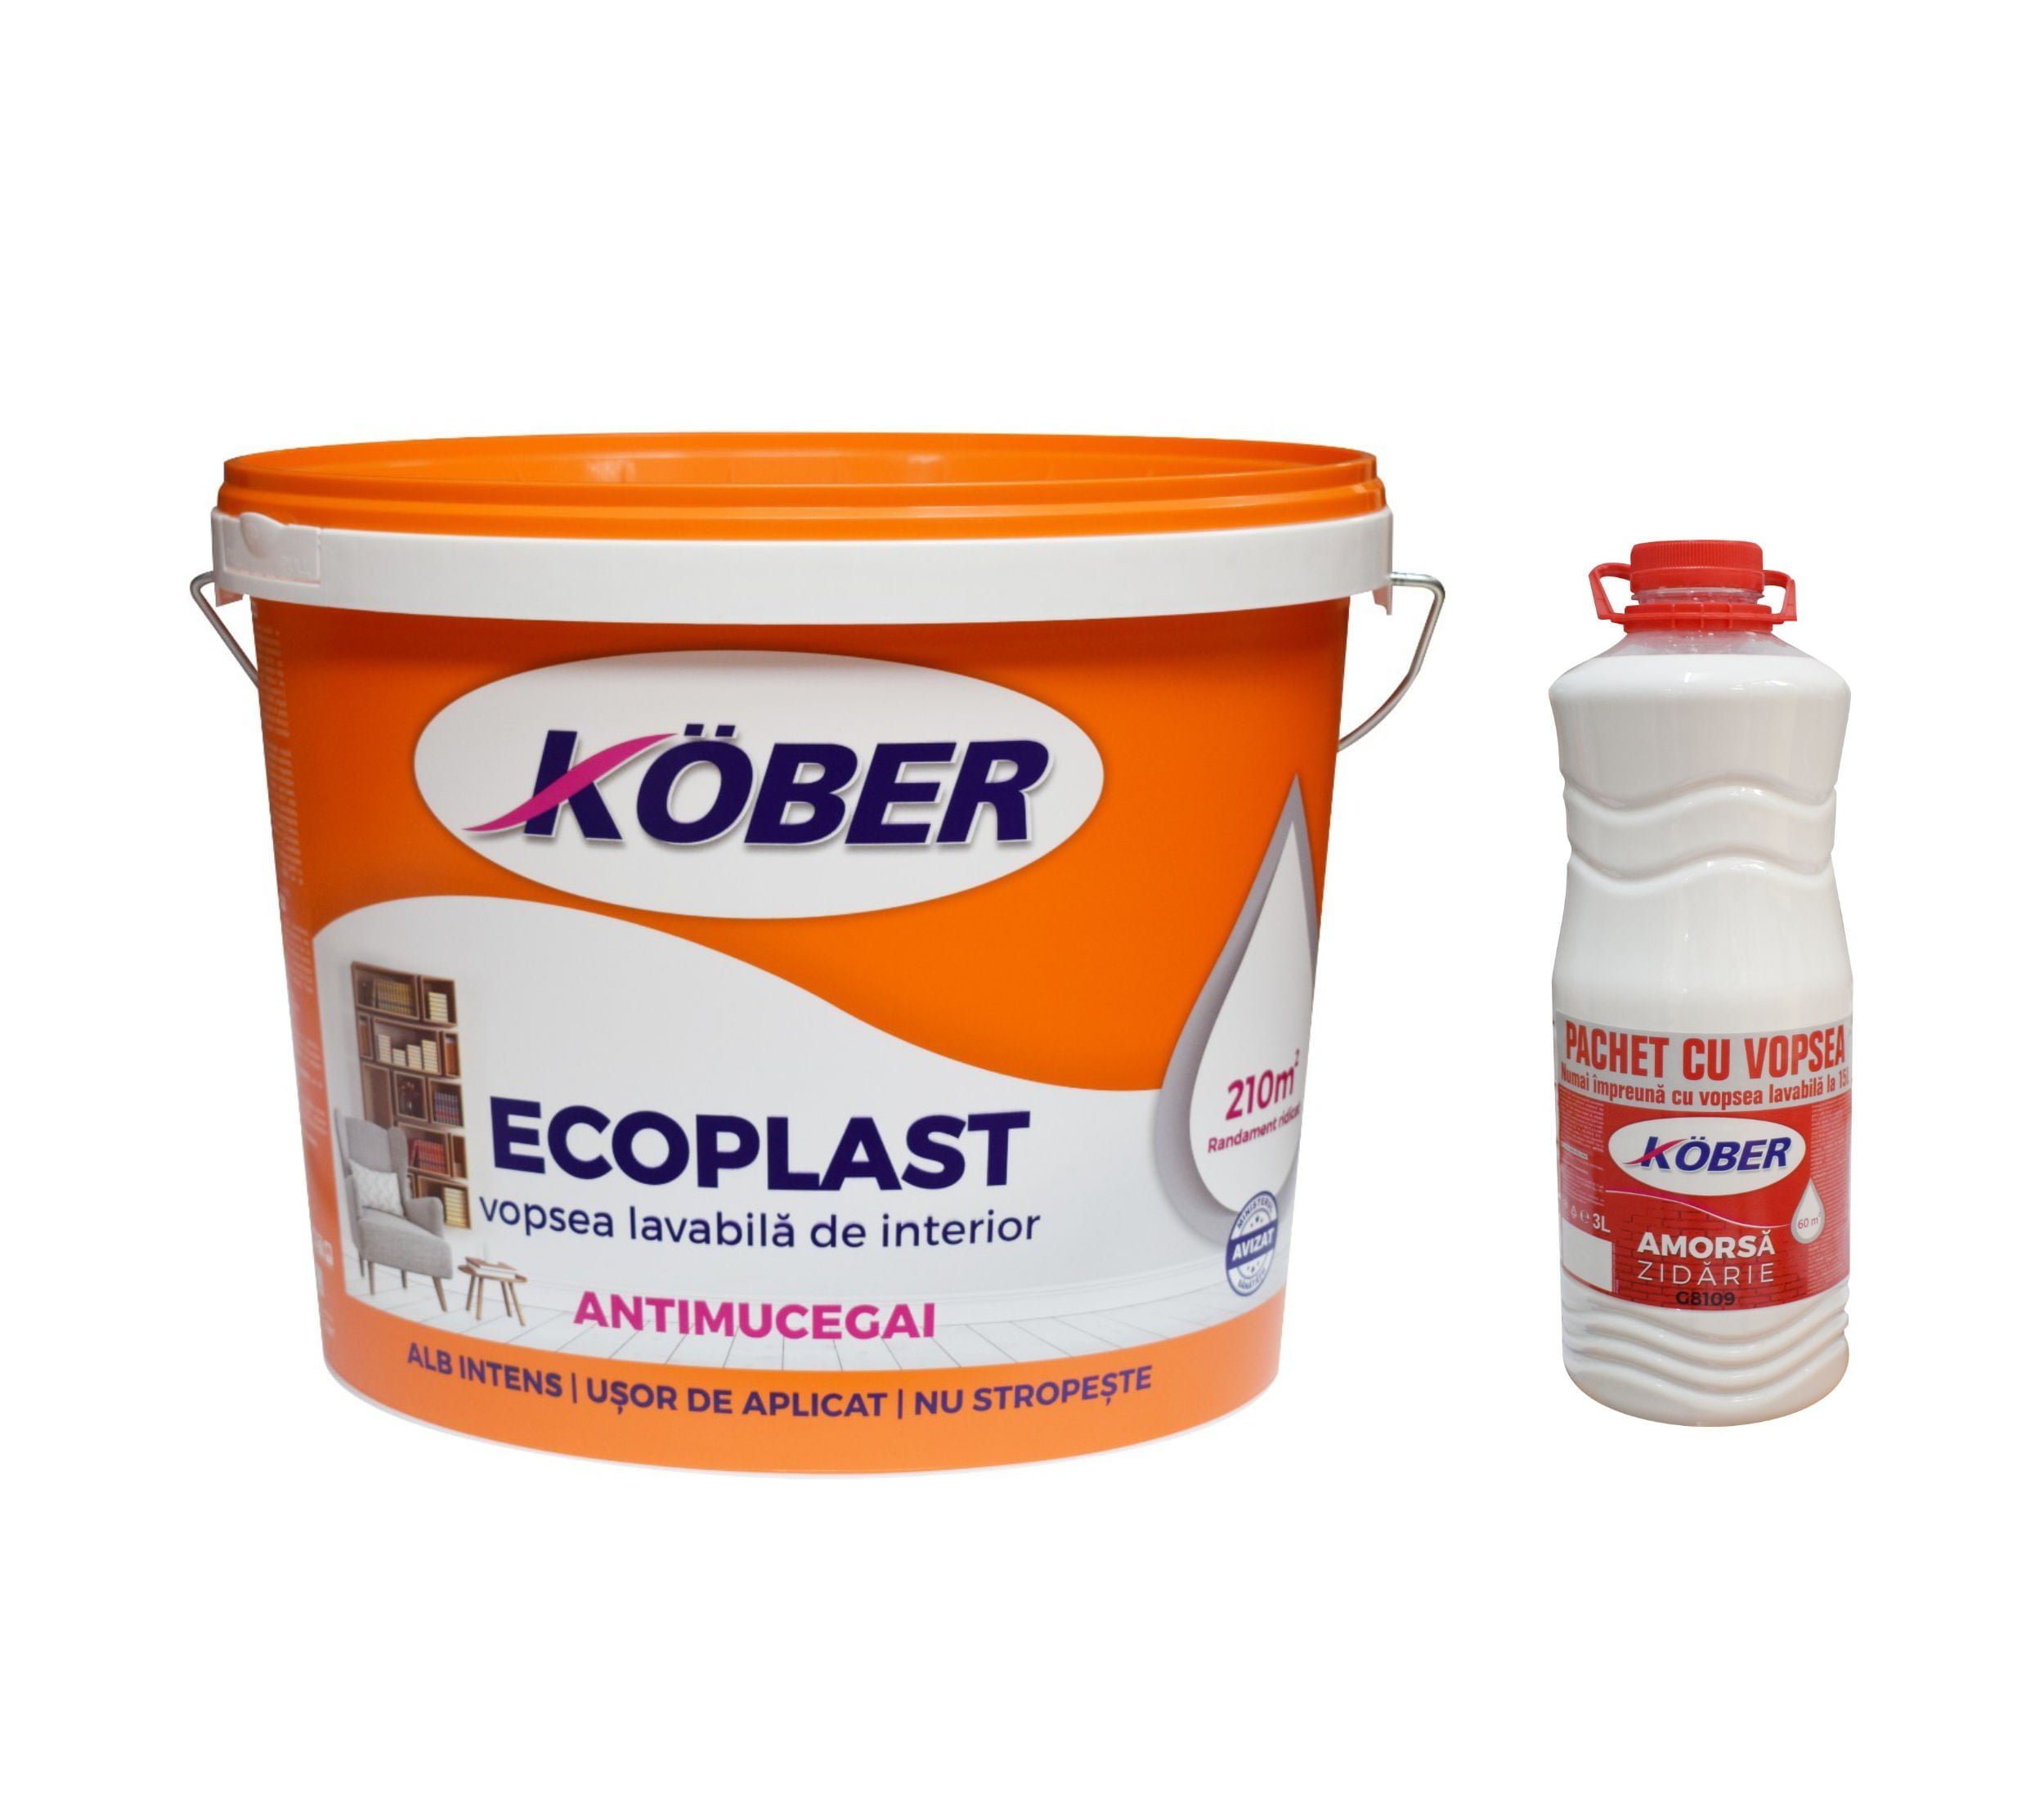 Vopsea lavabila interior, Ecoplast, antimucegai, alba, 15 L + Kober 3 L - Damira Constructii